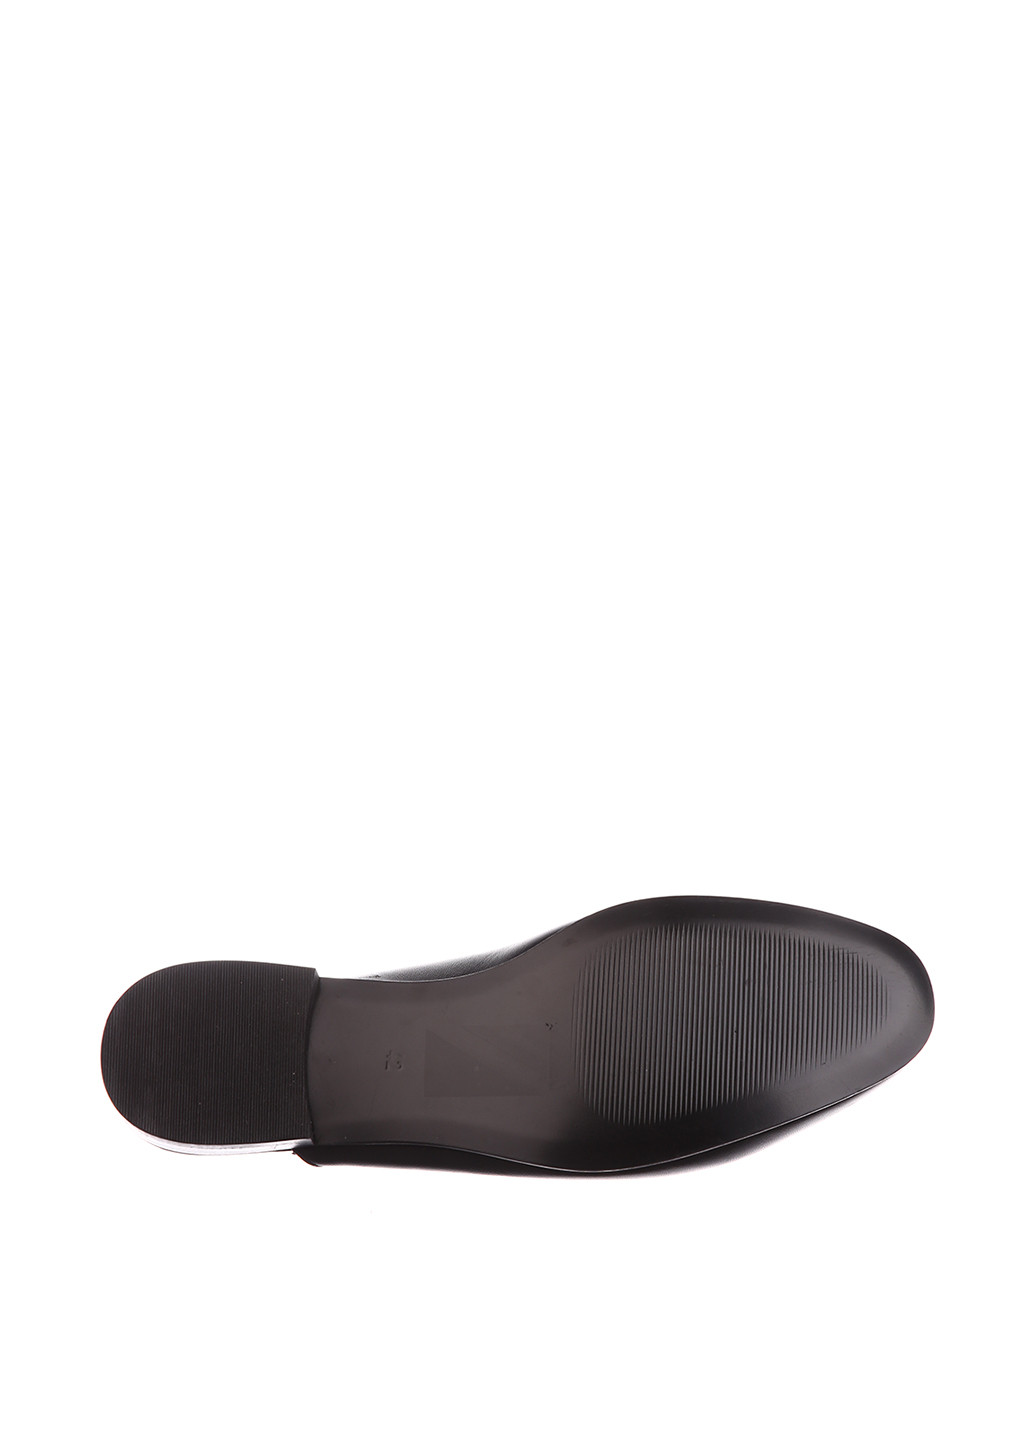 Черные мюли H&M с цепочками на низком каблуке